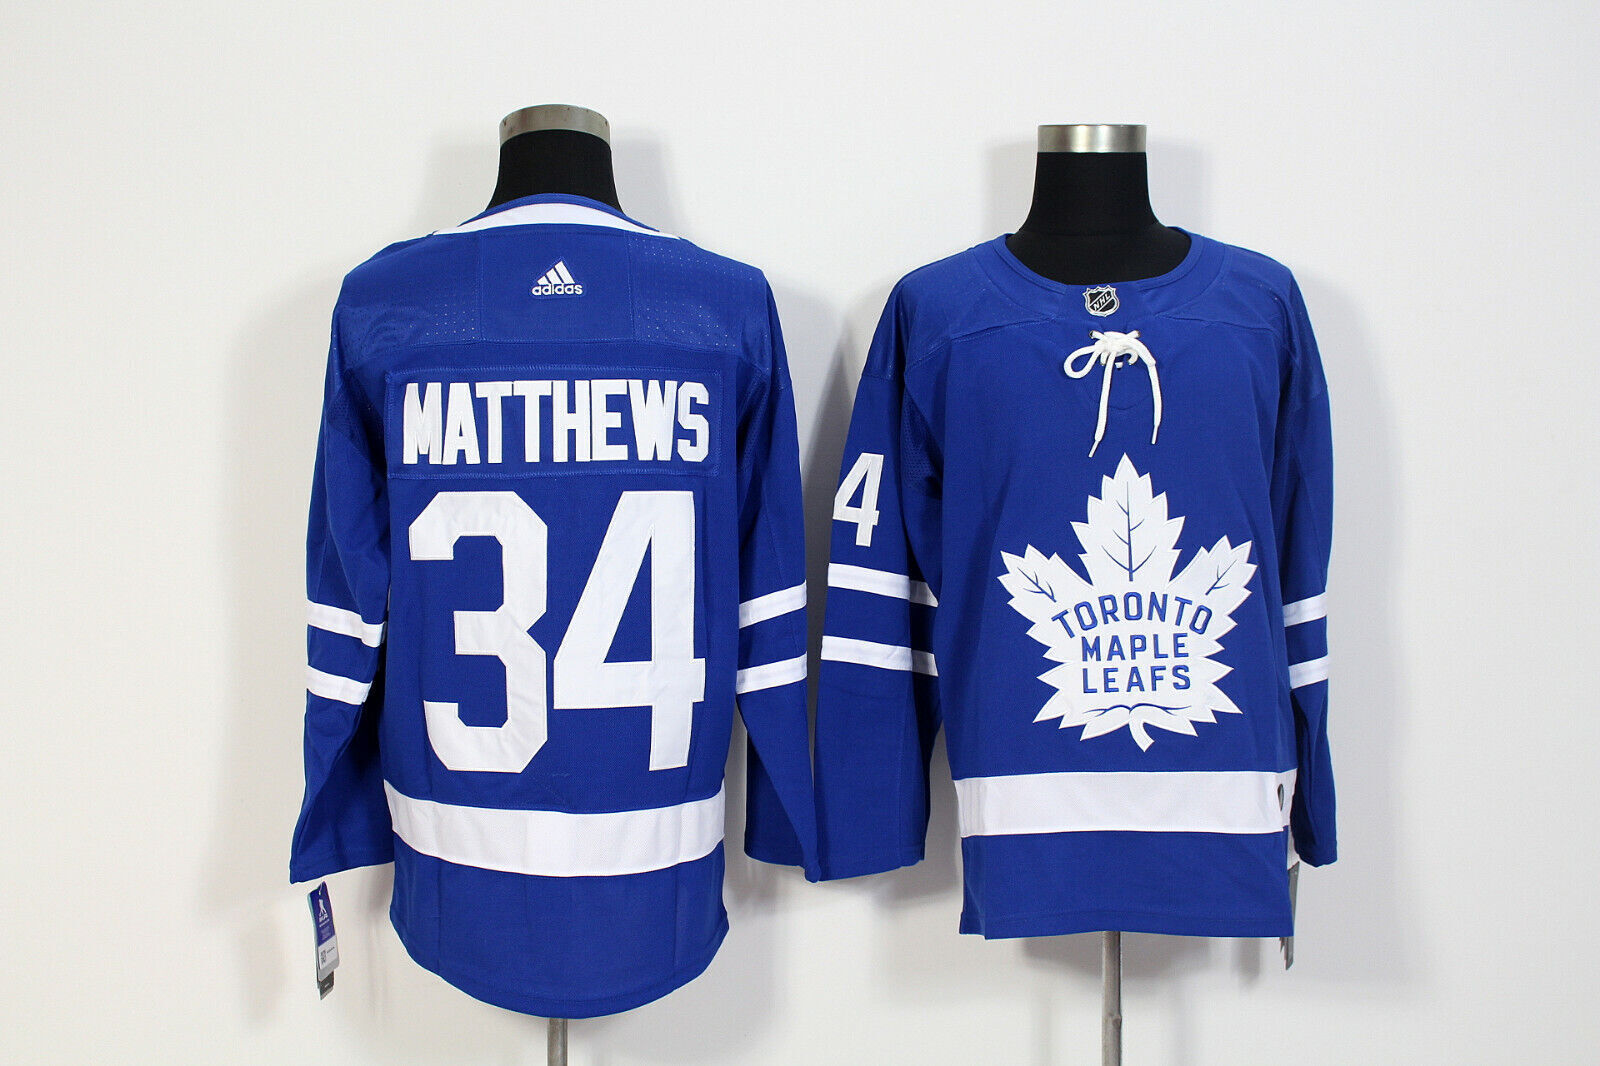 Toronto Maple Leafs #34 Auston Matthews Men's Blue White Retro Jersey